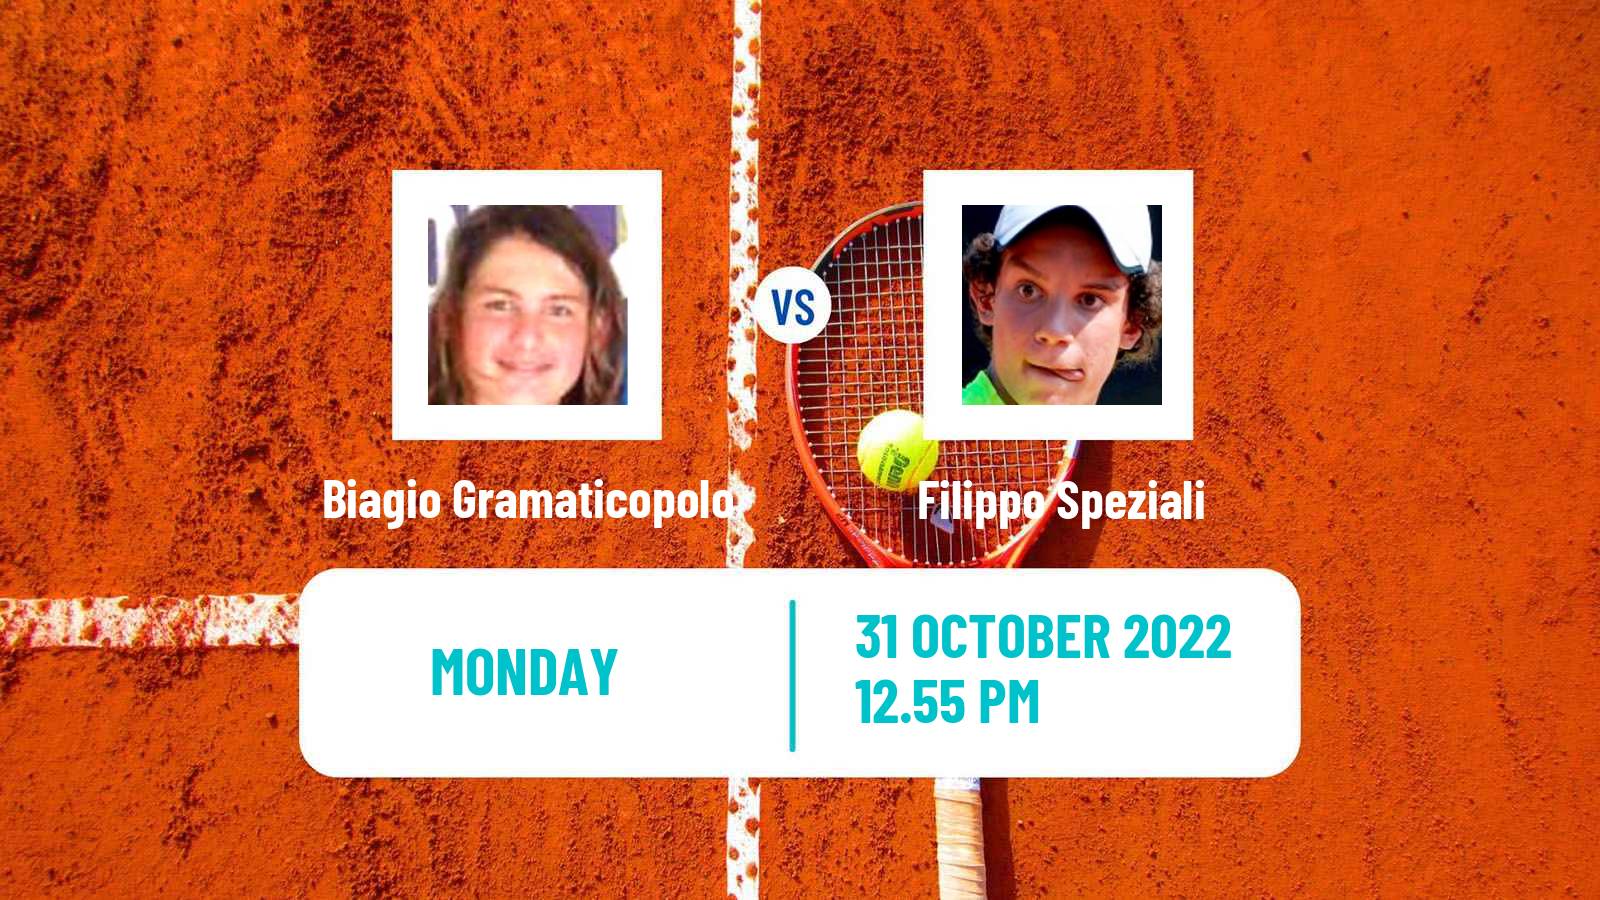 Tennis ITF Tournaments Biagio Gramaticopolo - Filippo Speziali